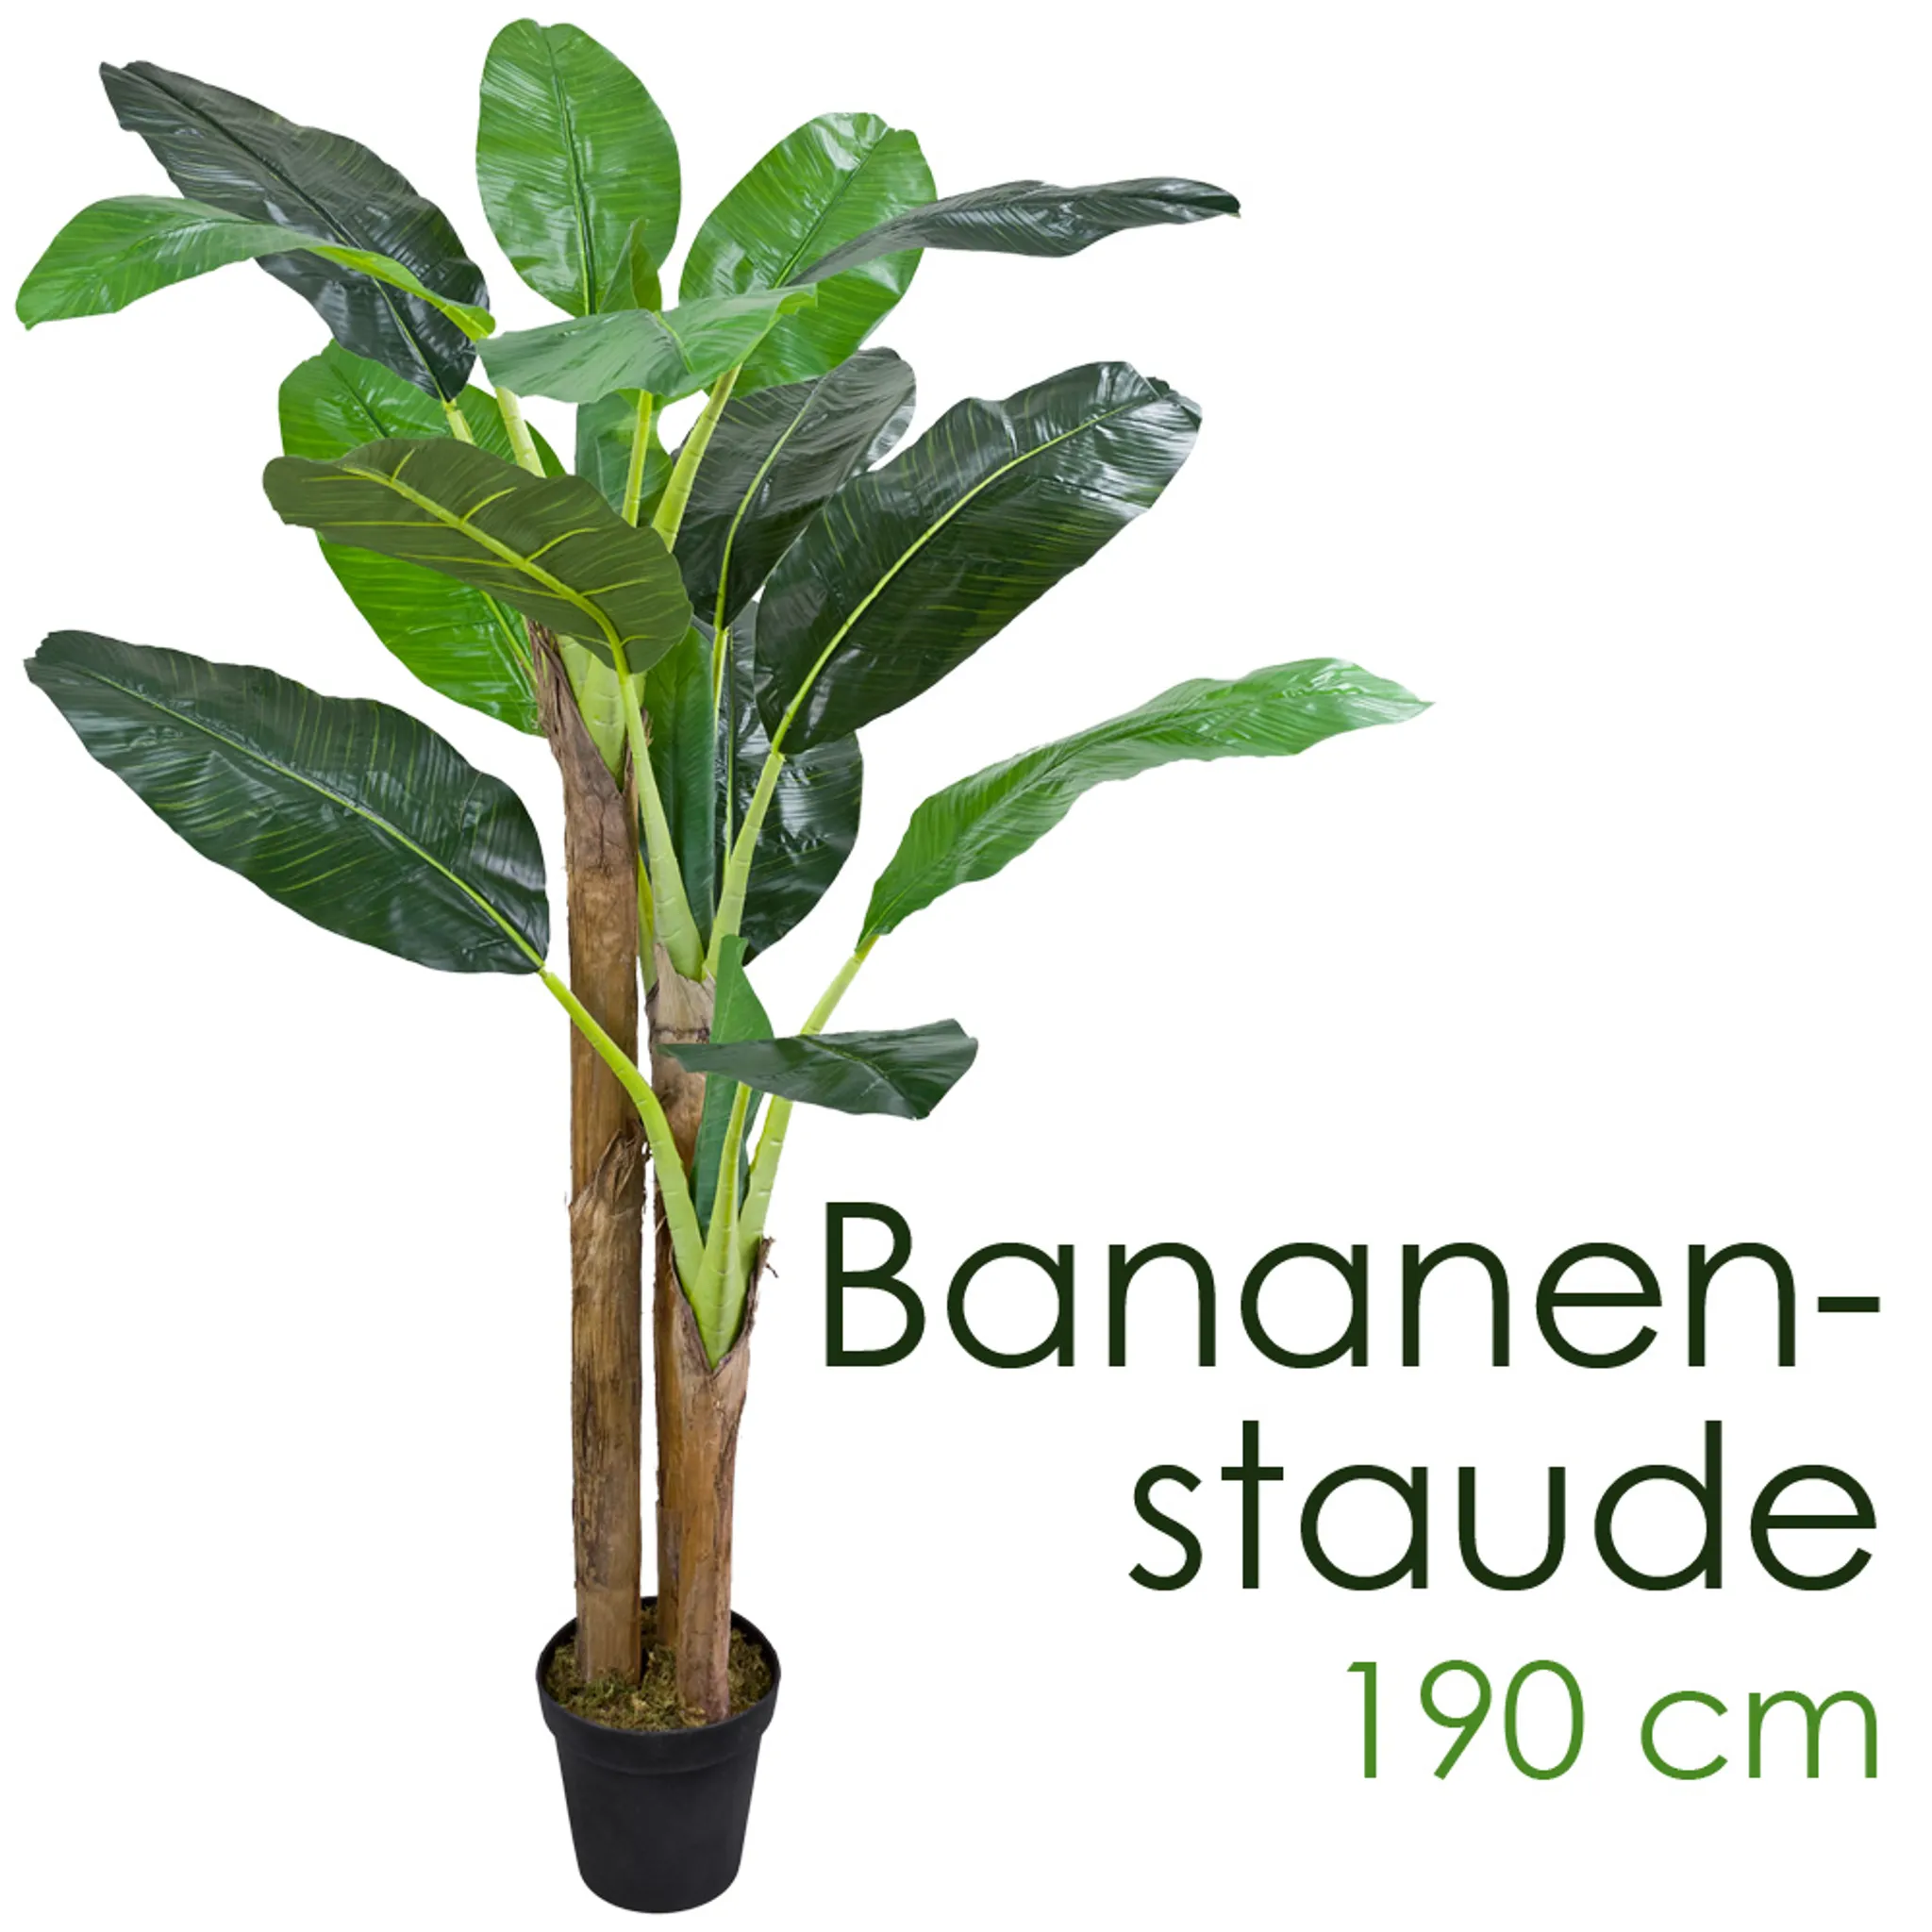 A 190cm S And A 180cm M Bananenbaum Bananenstaude Kunstpflanze | Kaufland.de